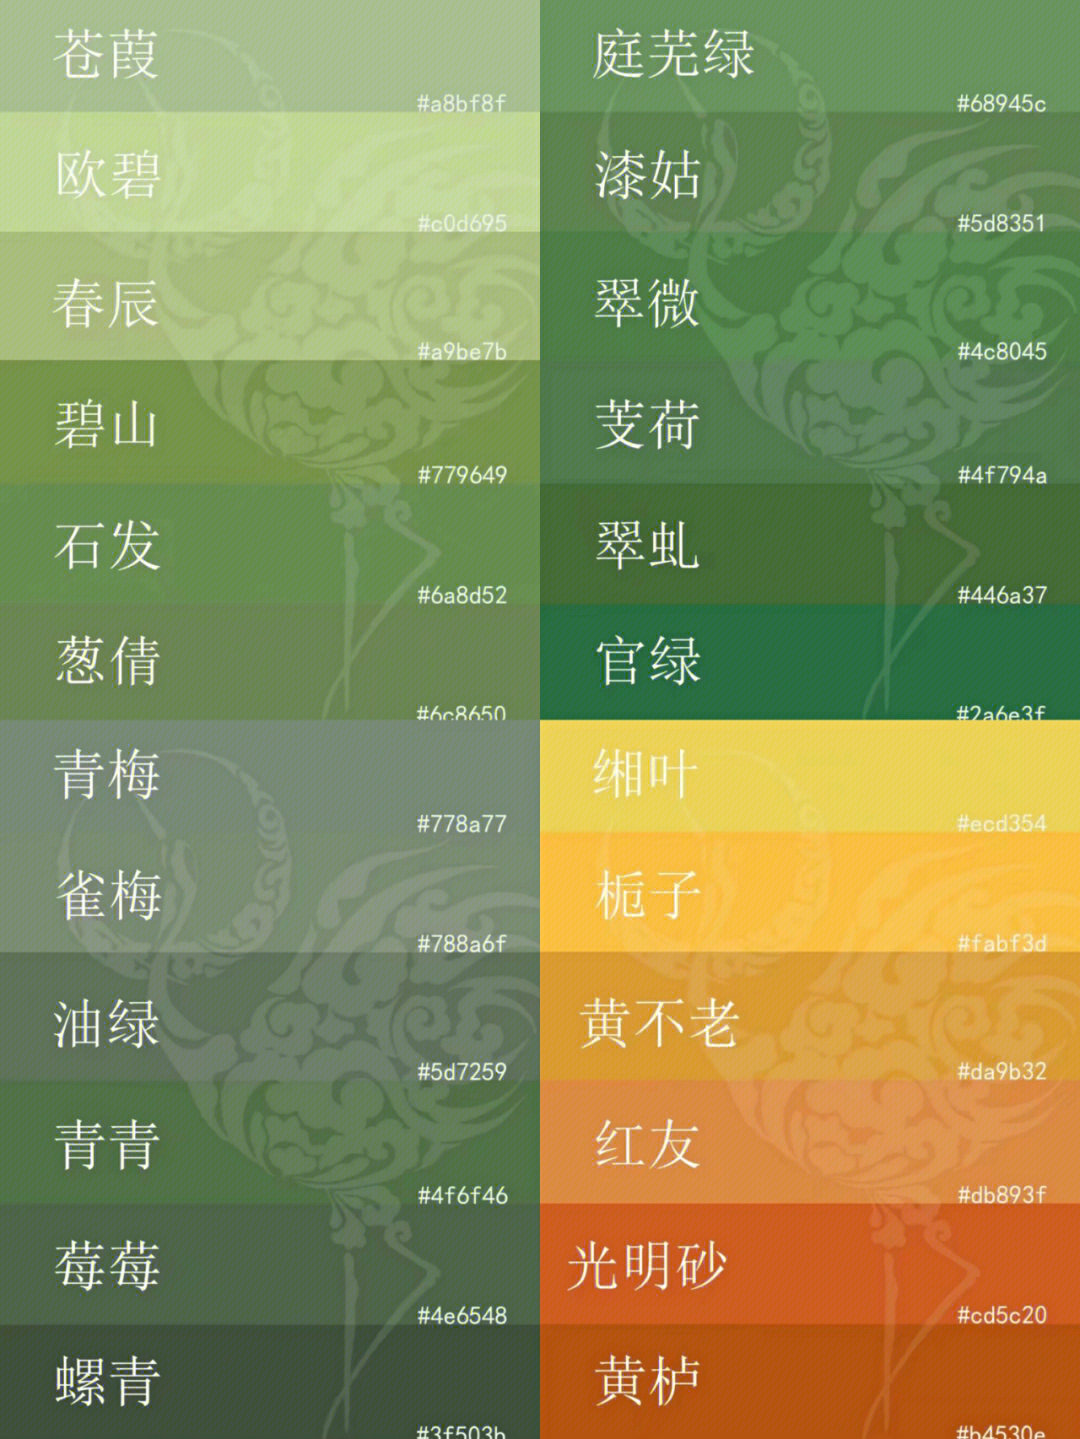 中国传统色绿色系色卡丨神仙色彩